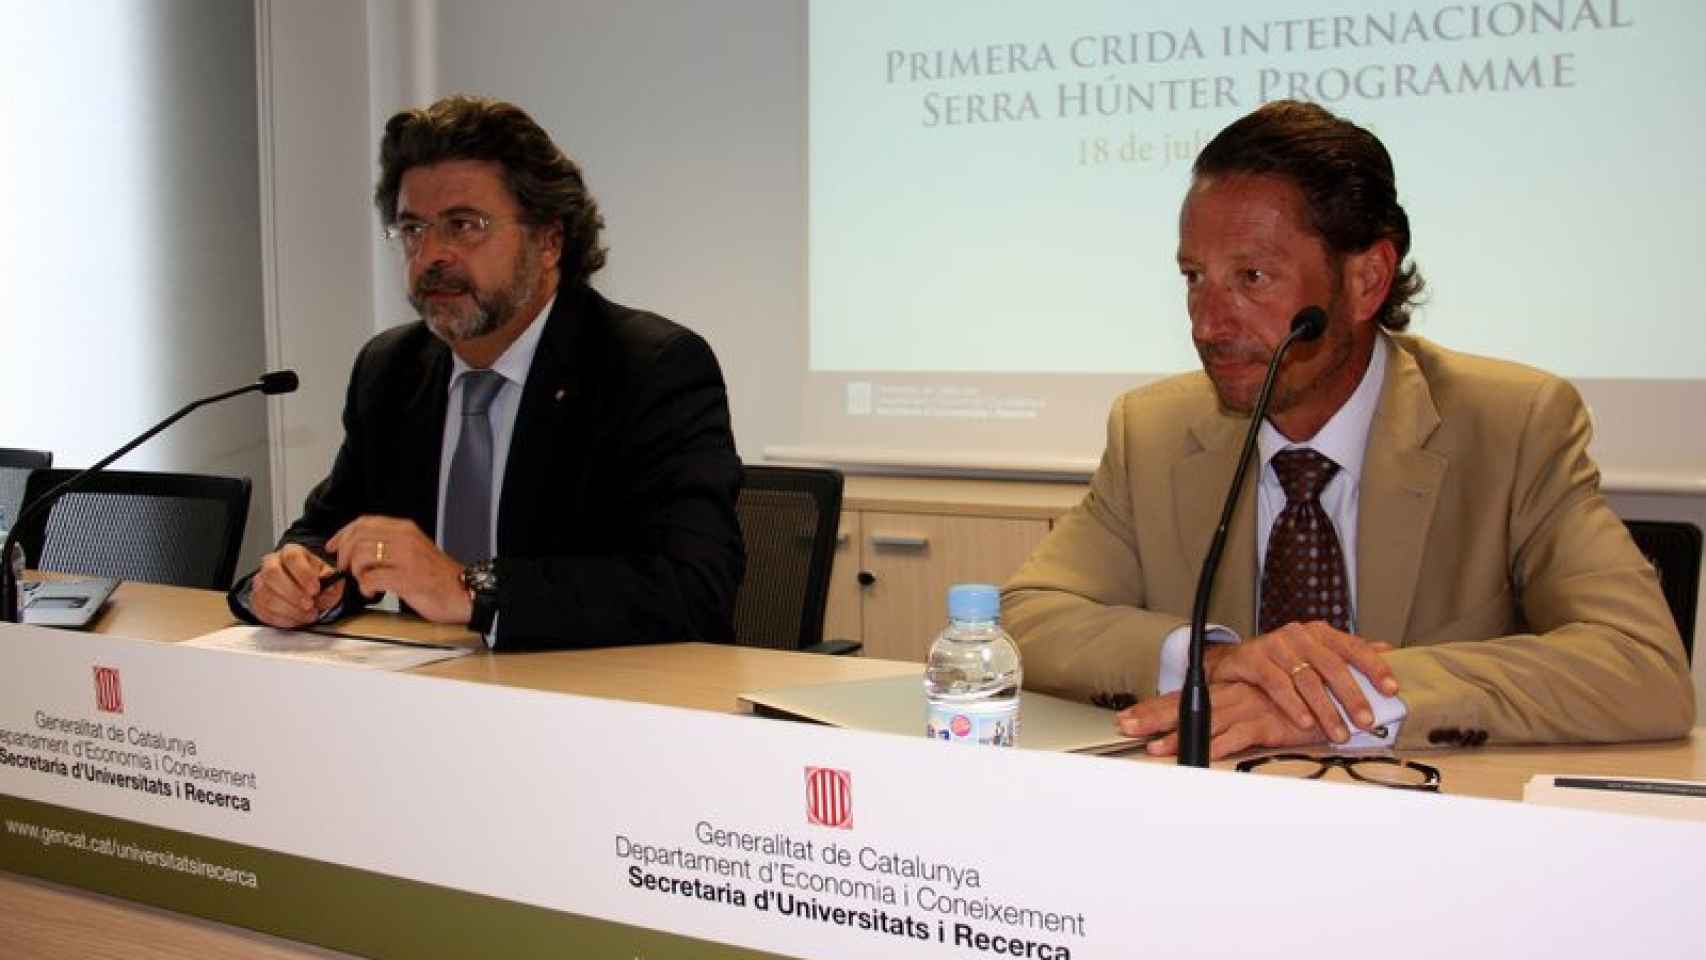 El secretari d'Universitat i Recerca, Antoni Castellà, i el director acadèmic del Serra Húnter Programme, Enrique García-Berro.